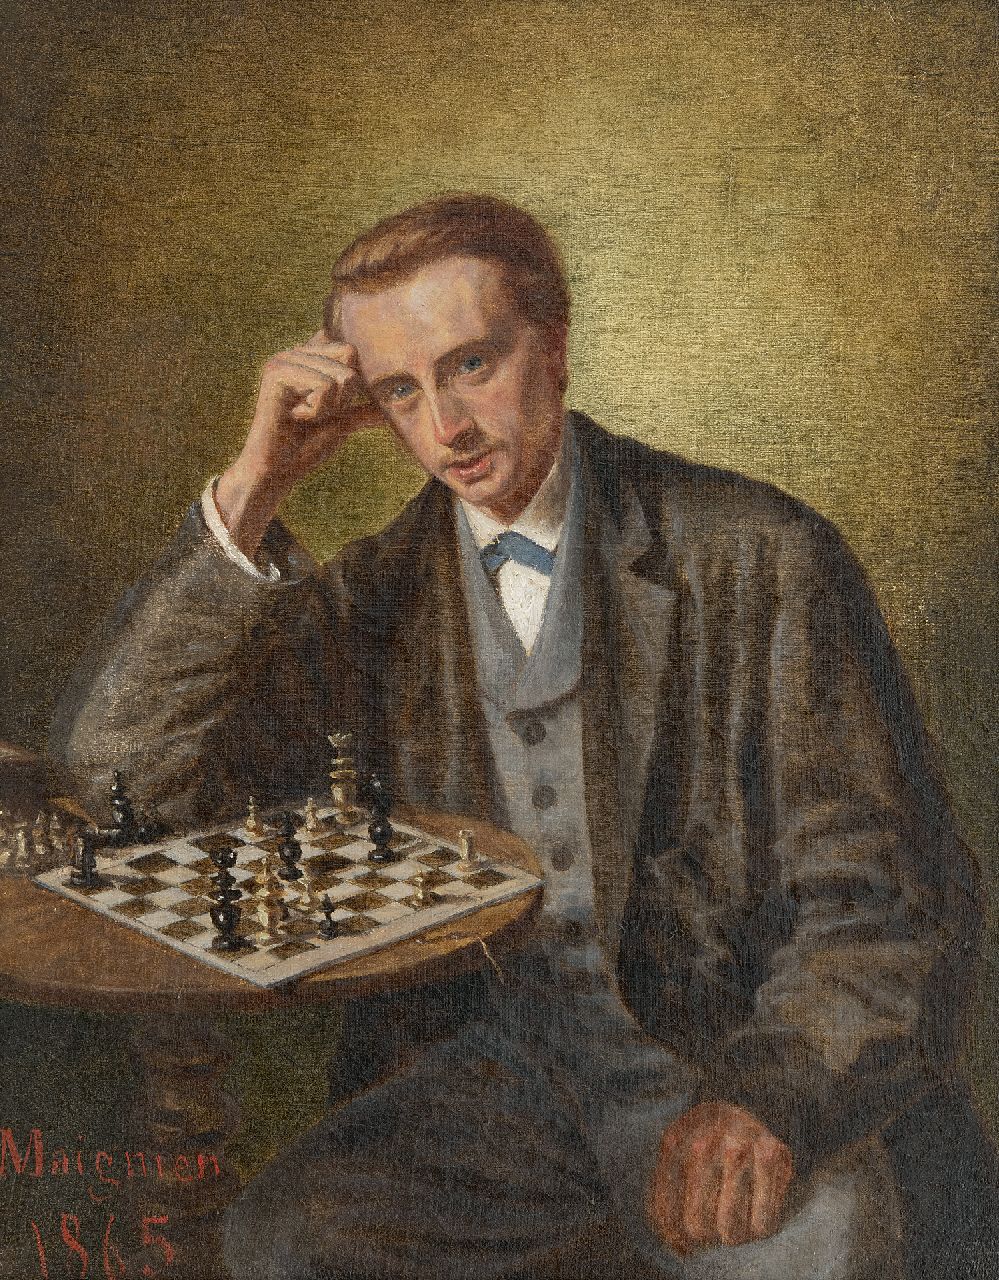 Maignien | Der Schachspieler, Öl auf Leinwand auf Holz, 30,5 x 24,2 cm, Unterzeichnet l.u. und datiert 1865